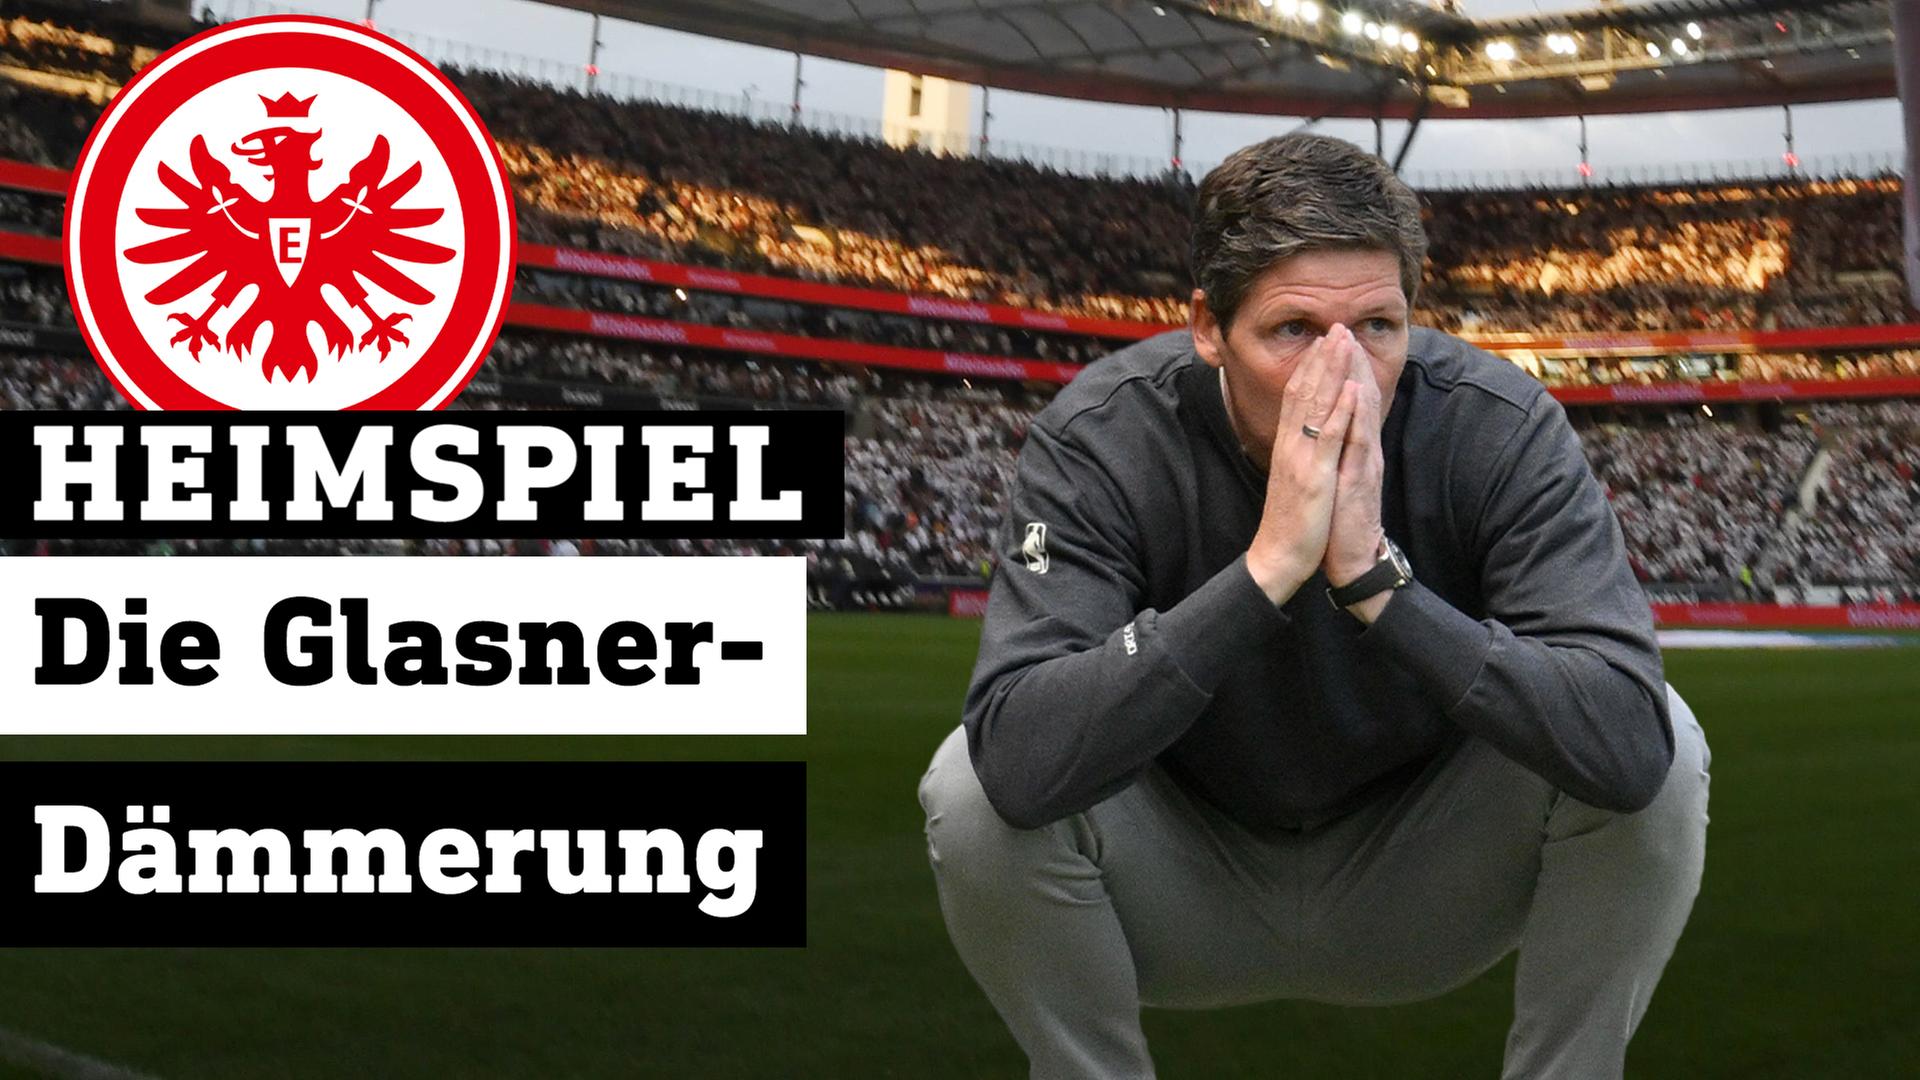 hr heimspiel Glasner-Dämmerung bei Eintracht Frankfurt